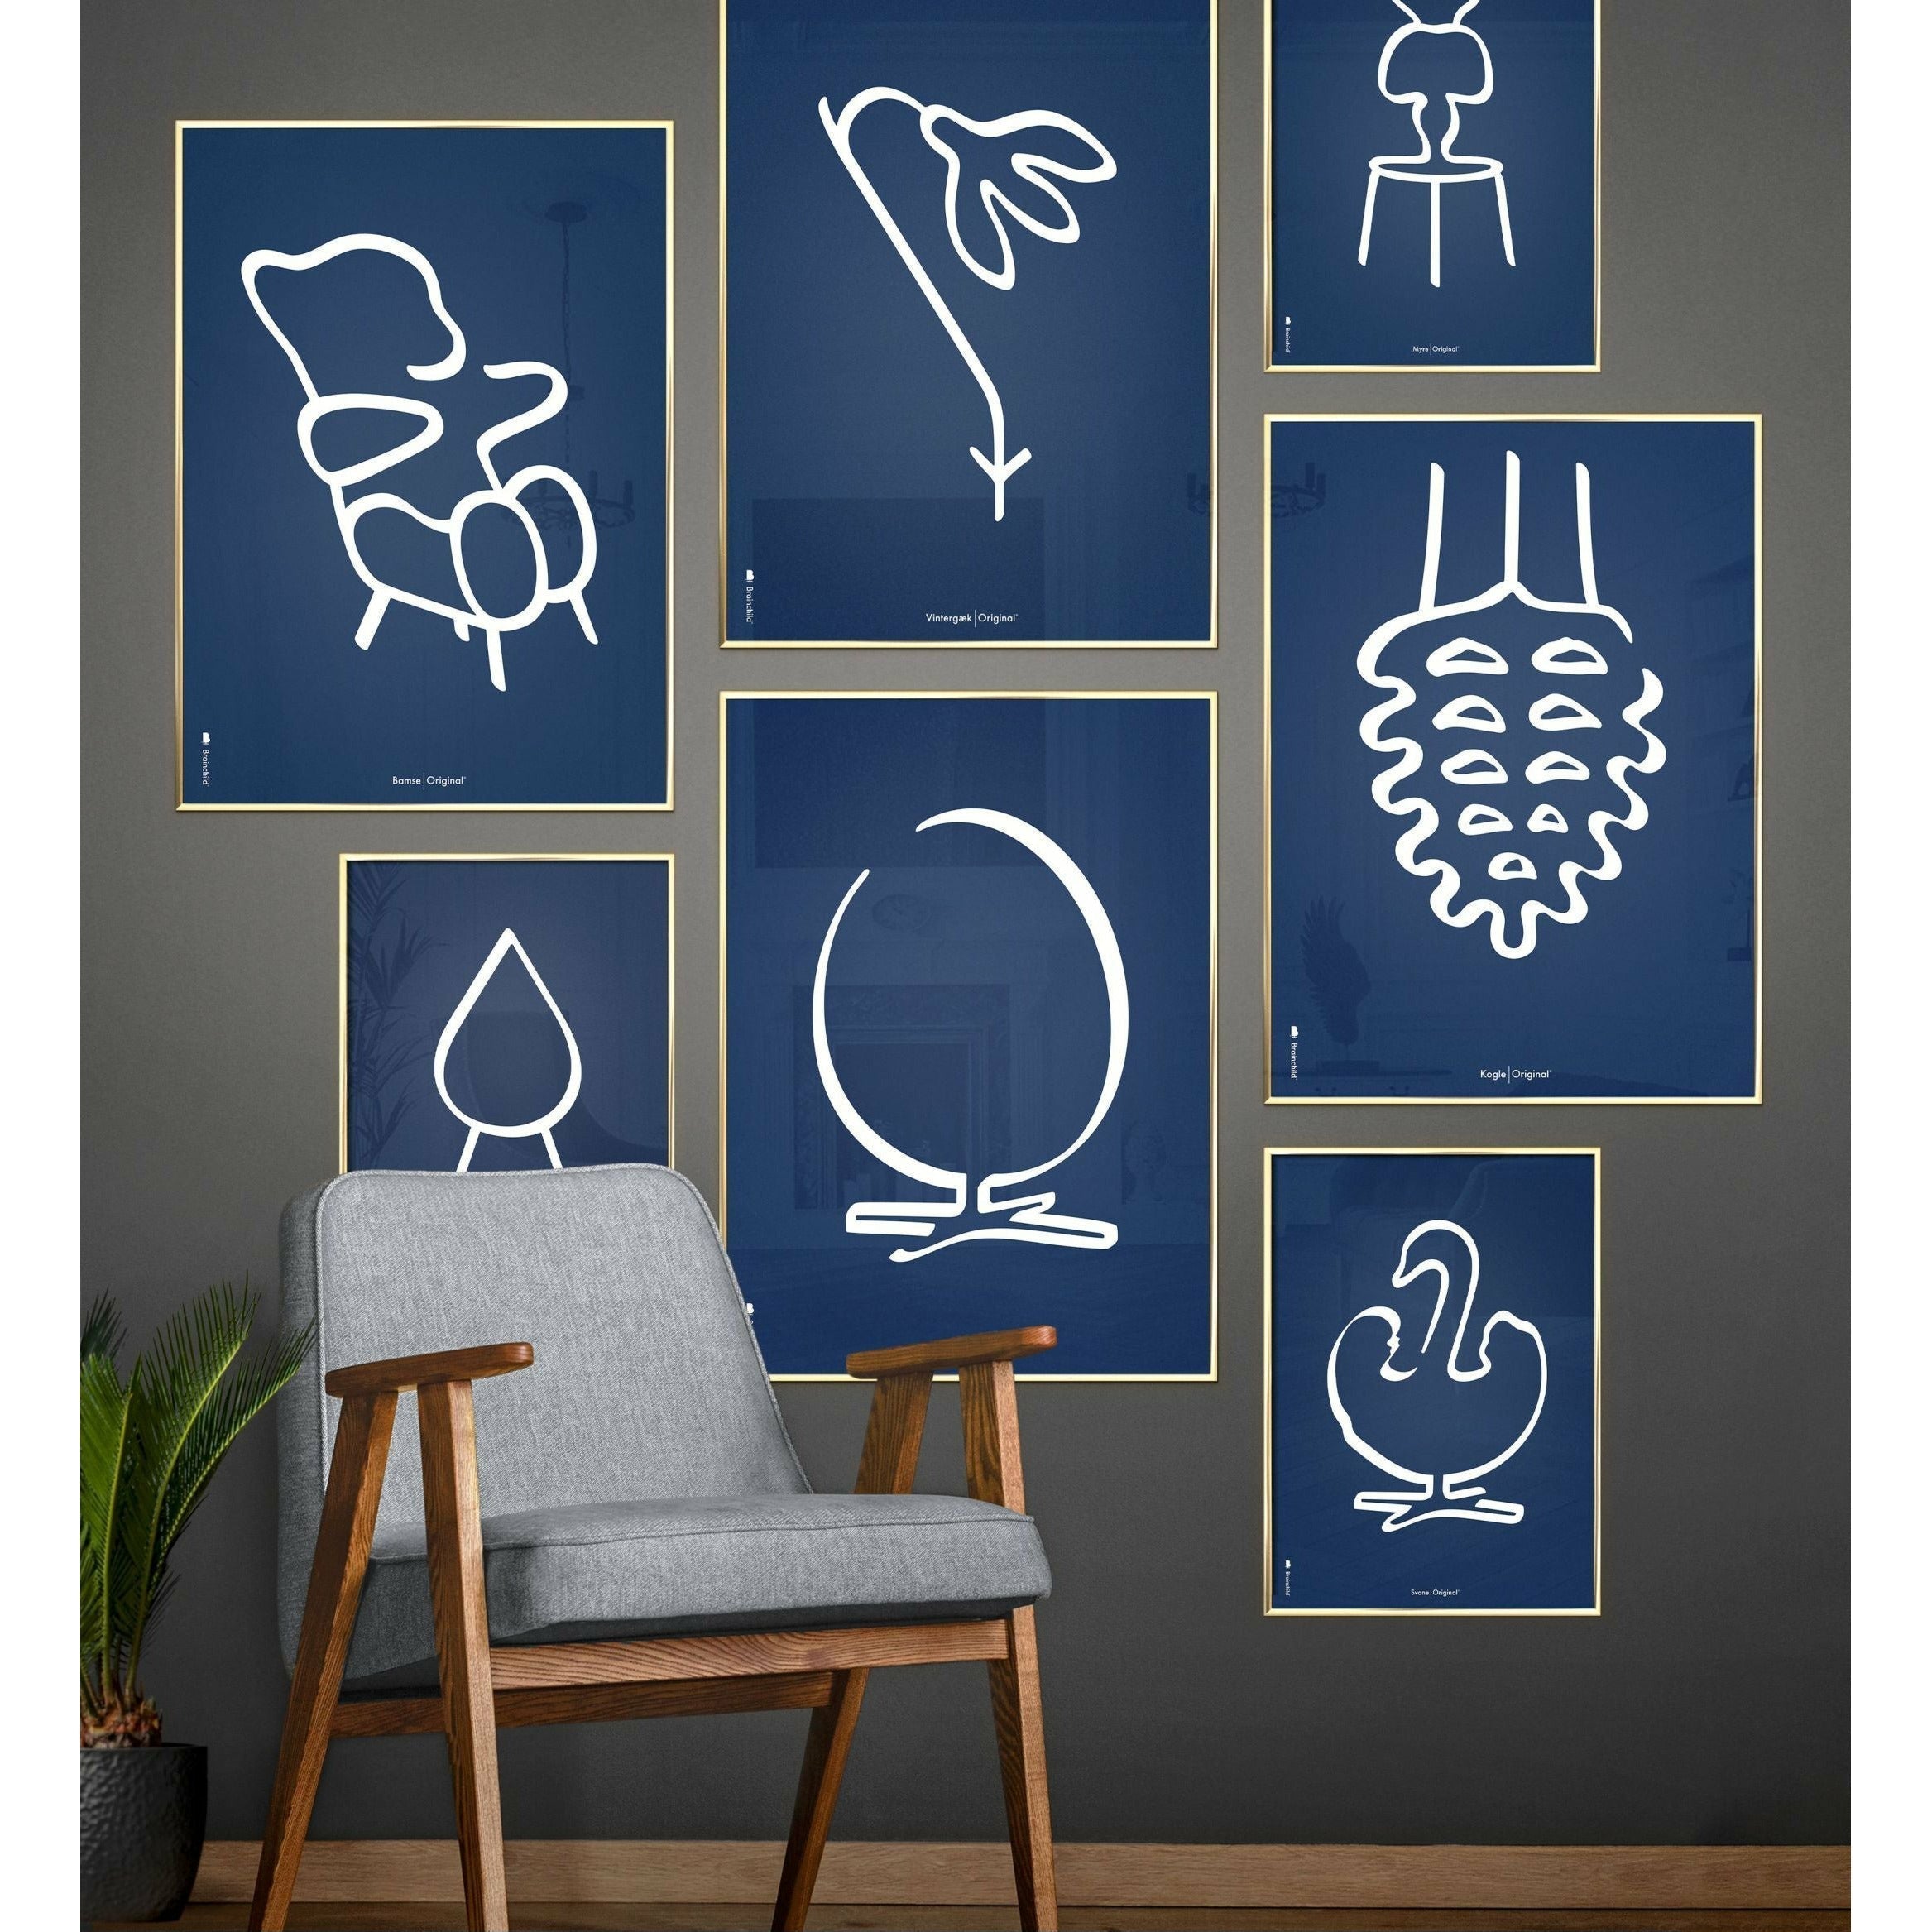 Pomysły plakat linii mrówek, rama wykonana z ciemnego drewna 30x40 cm, niebieskie tło